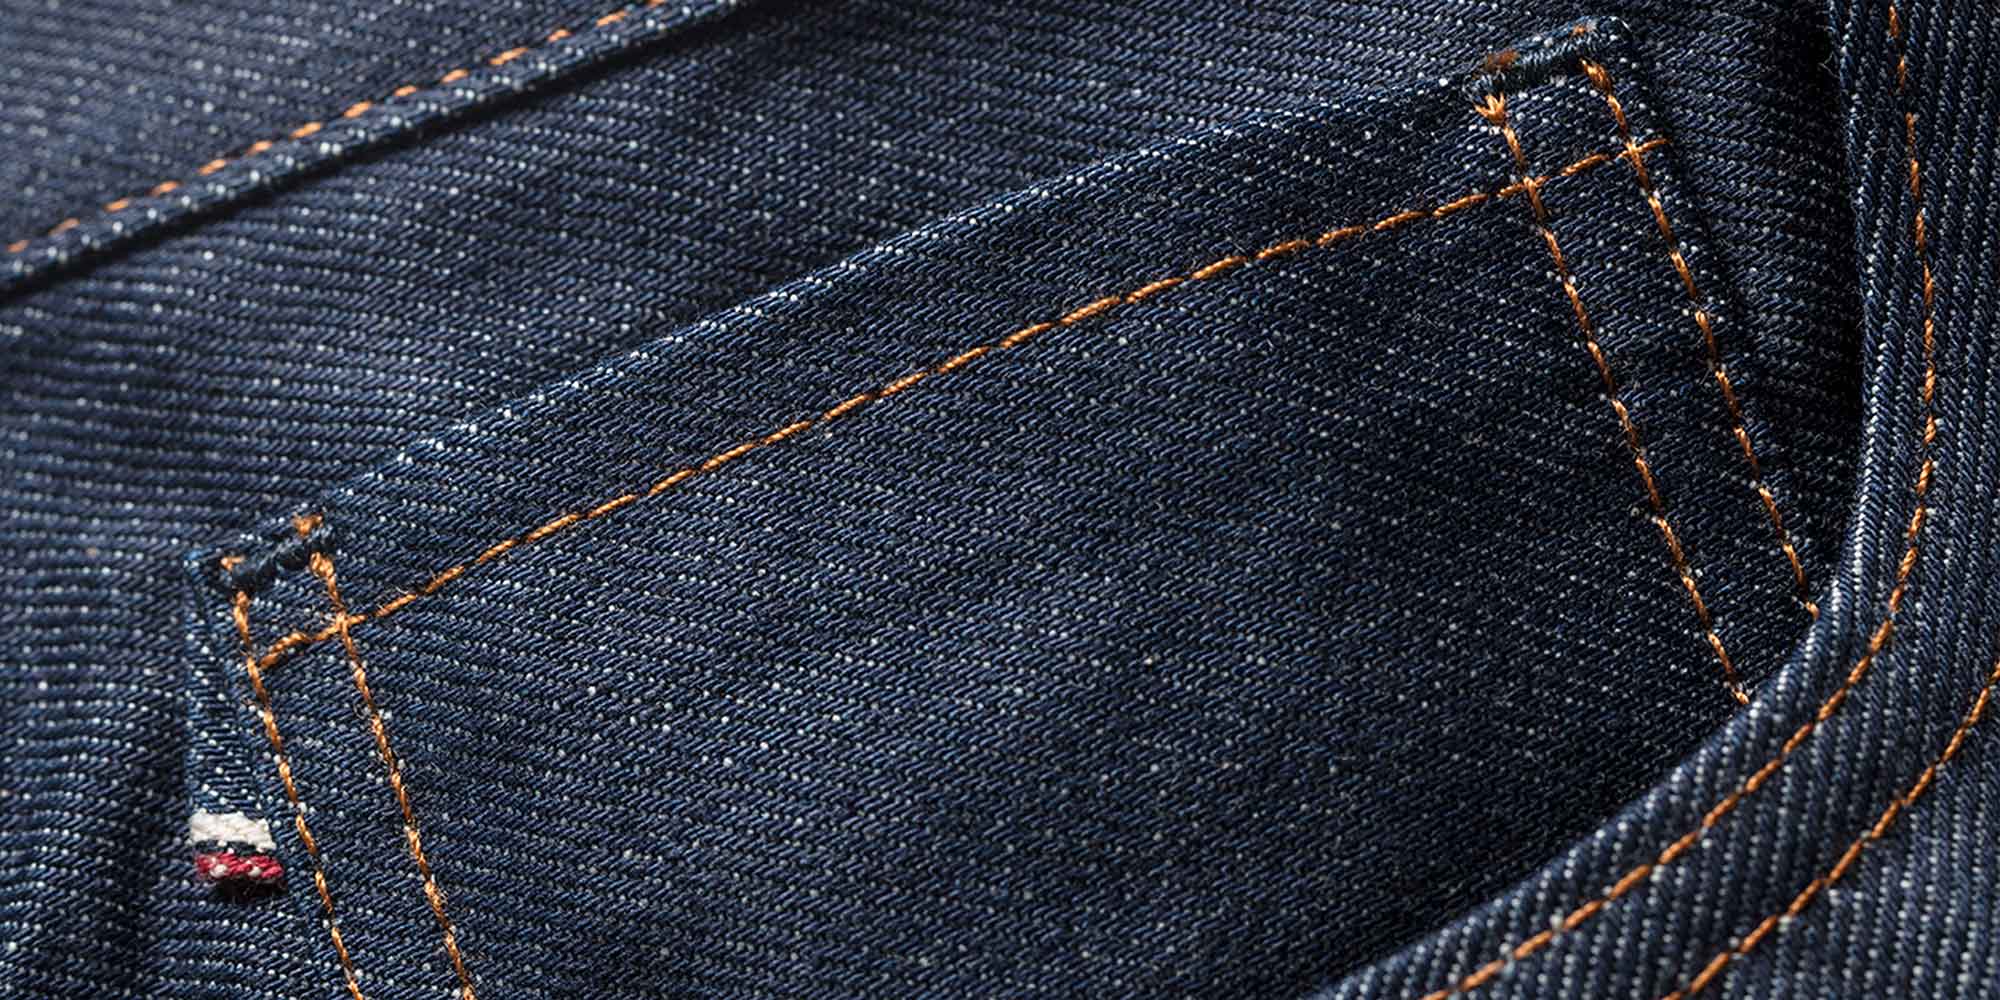 Comment reconnaitre la qualité d'un jeans ? (1/2)